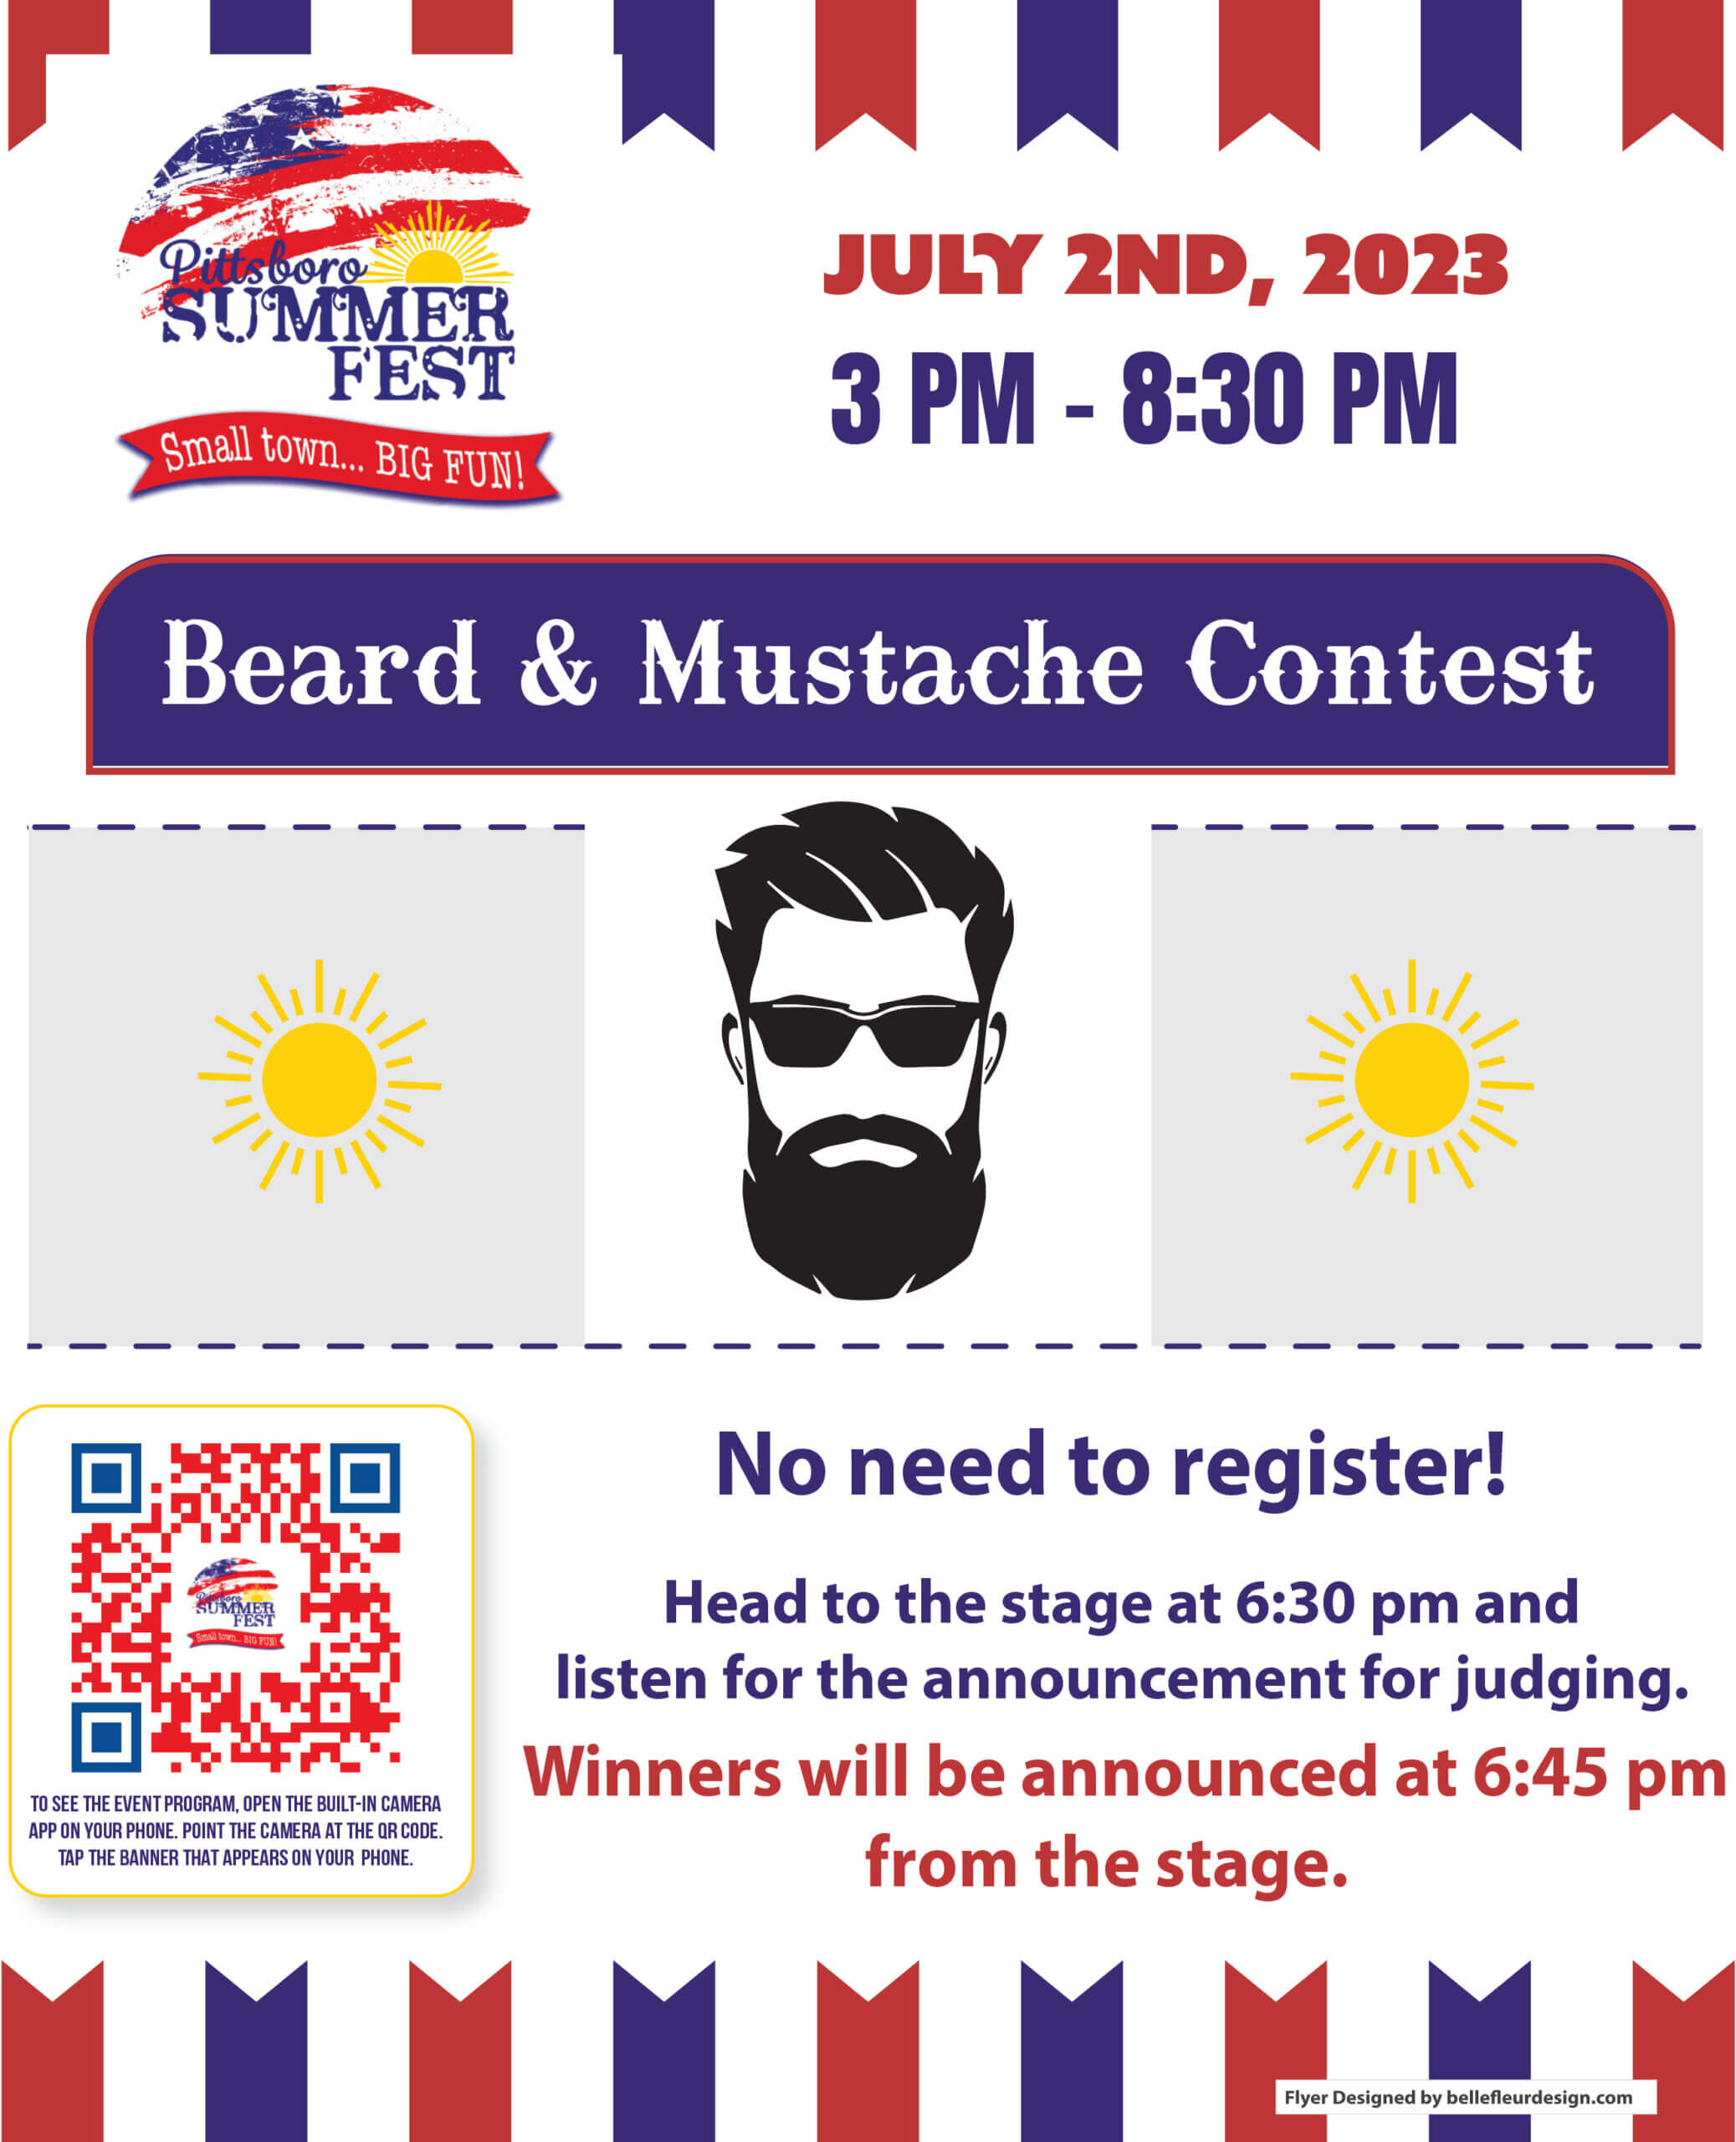 Summer Fest Beard and Mustache Contest flyer